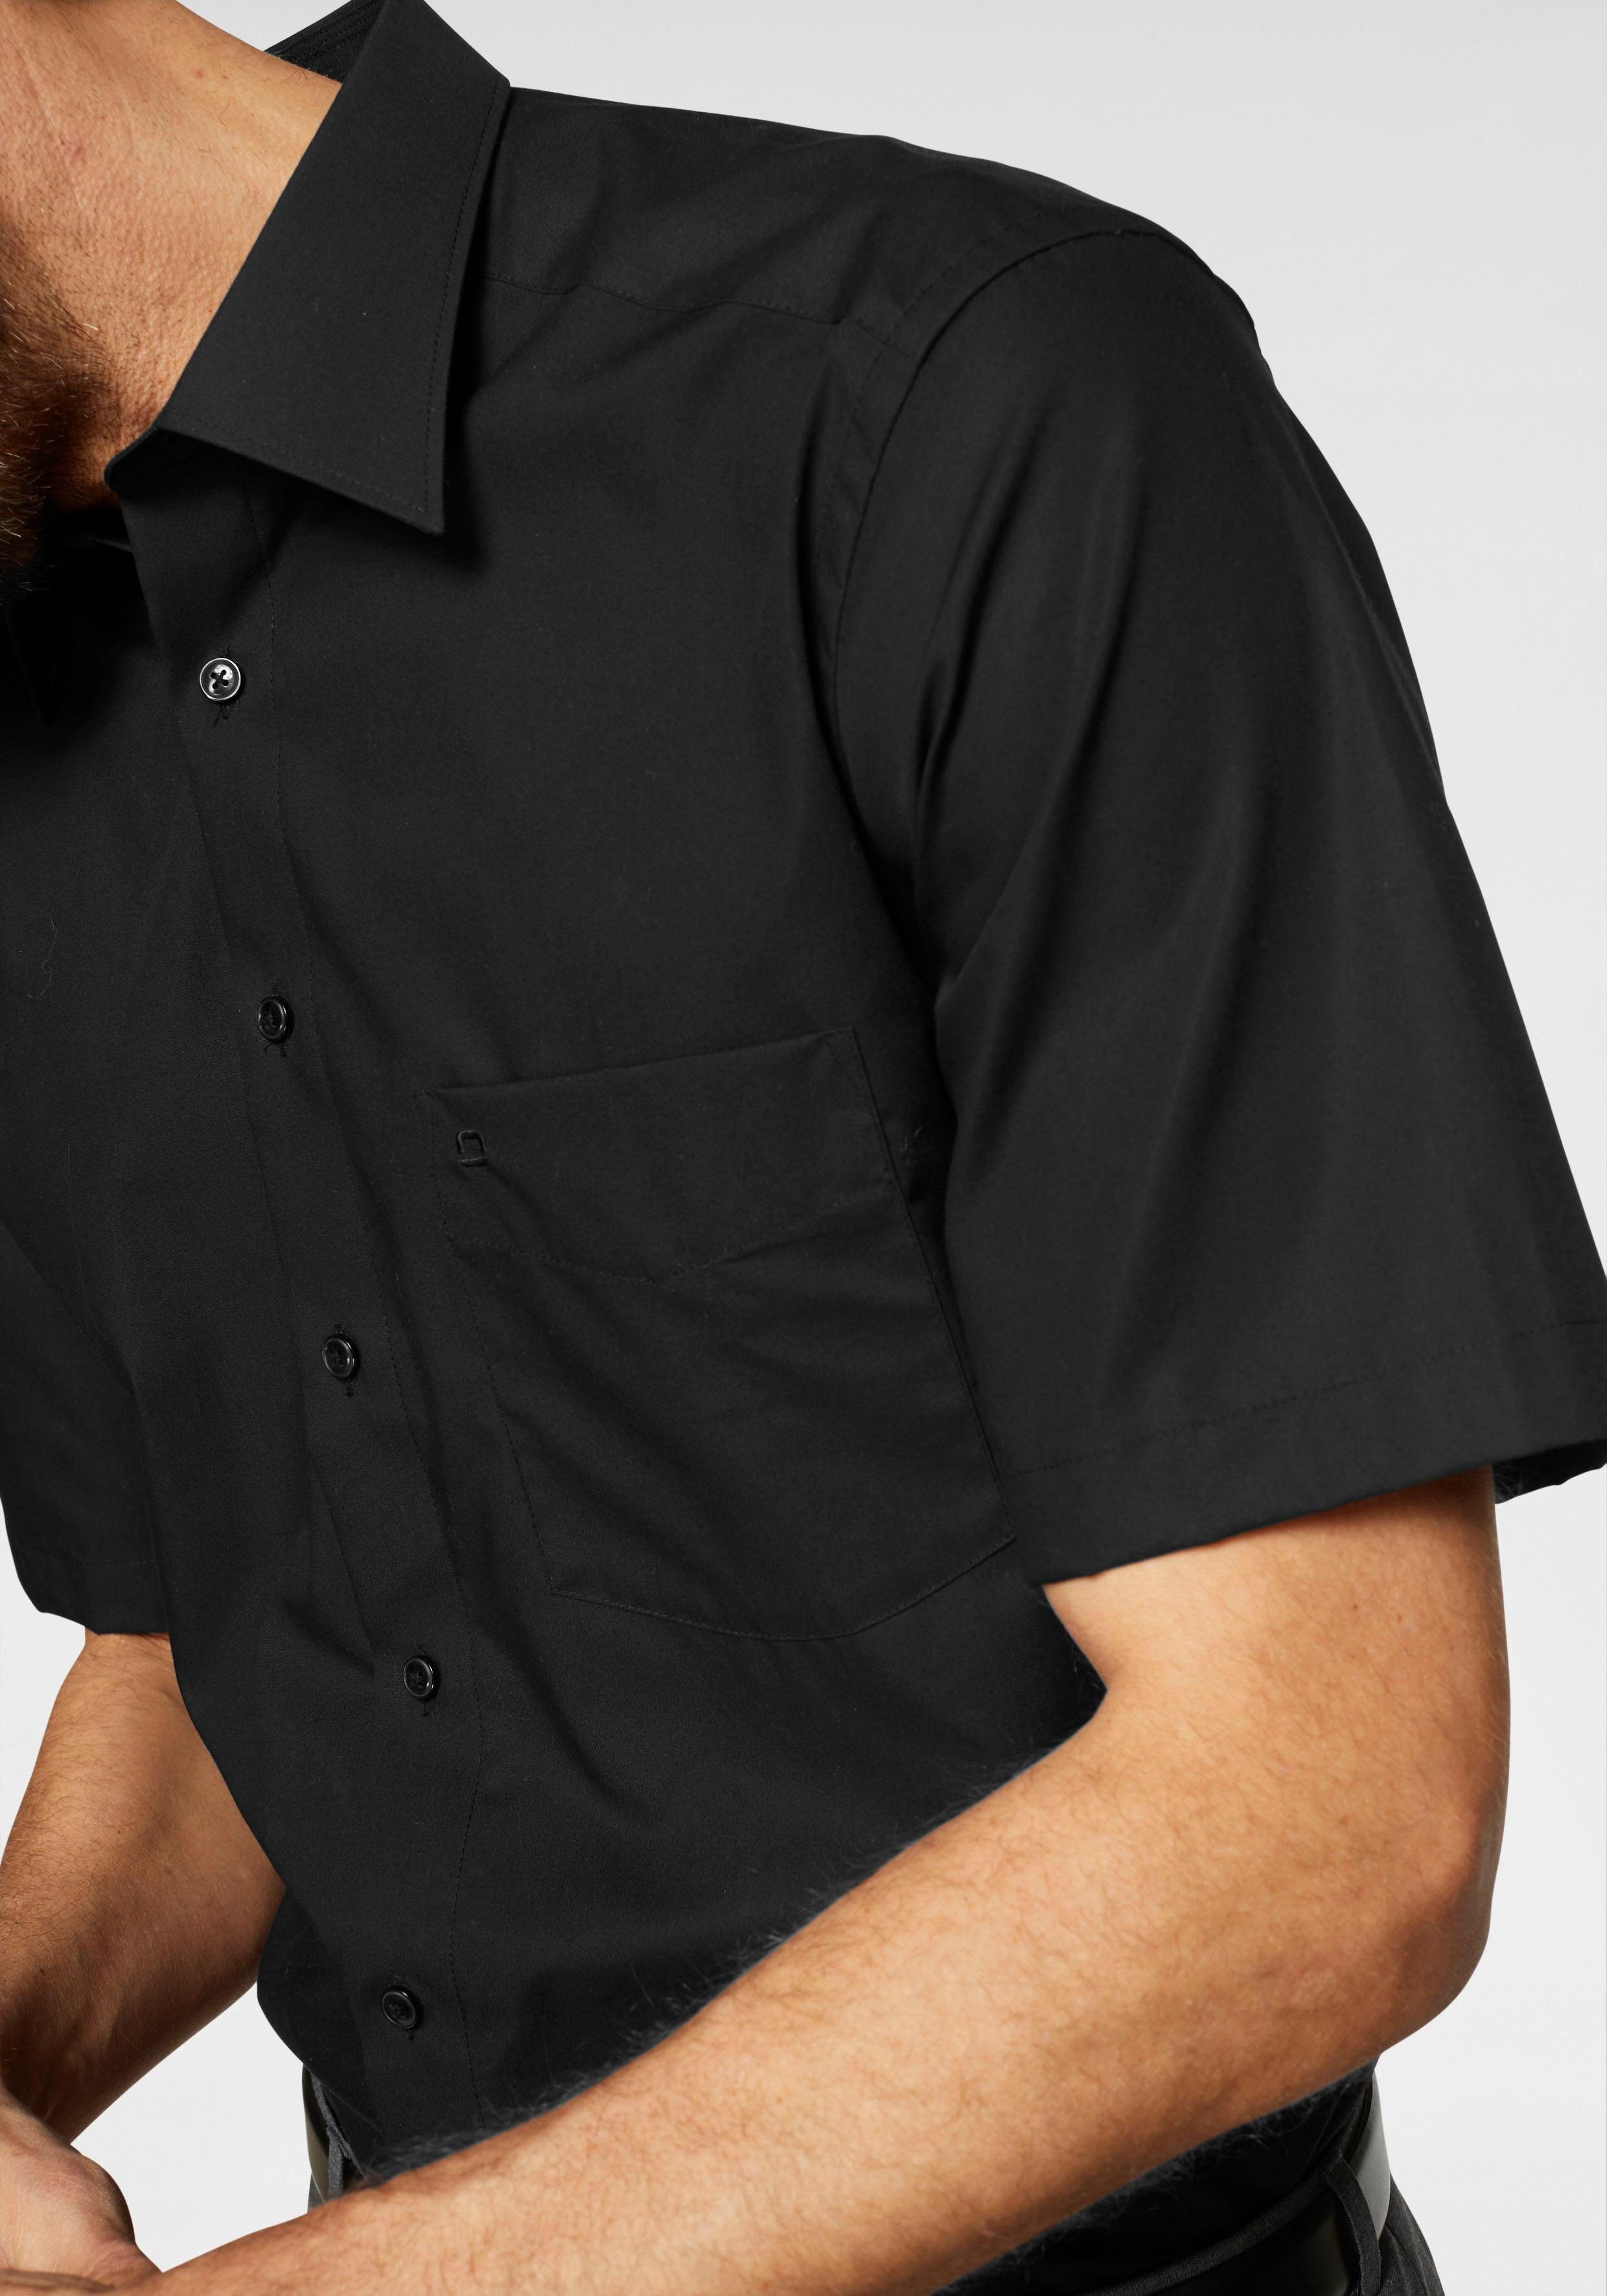 Brusttasche, Kurzarmhemd Luxor OLYMP schwarz comfort-fit Businesshemd mit bügelfrei